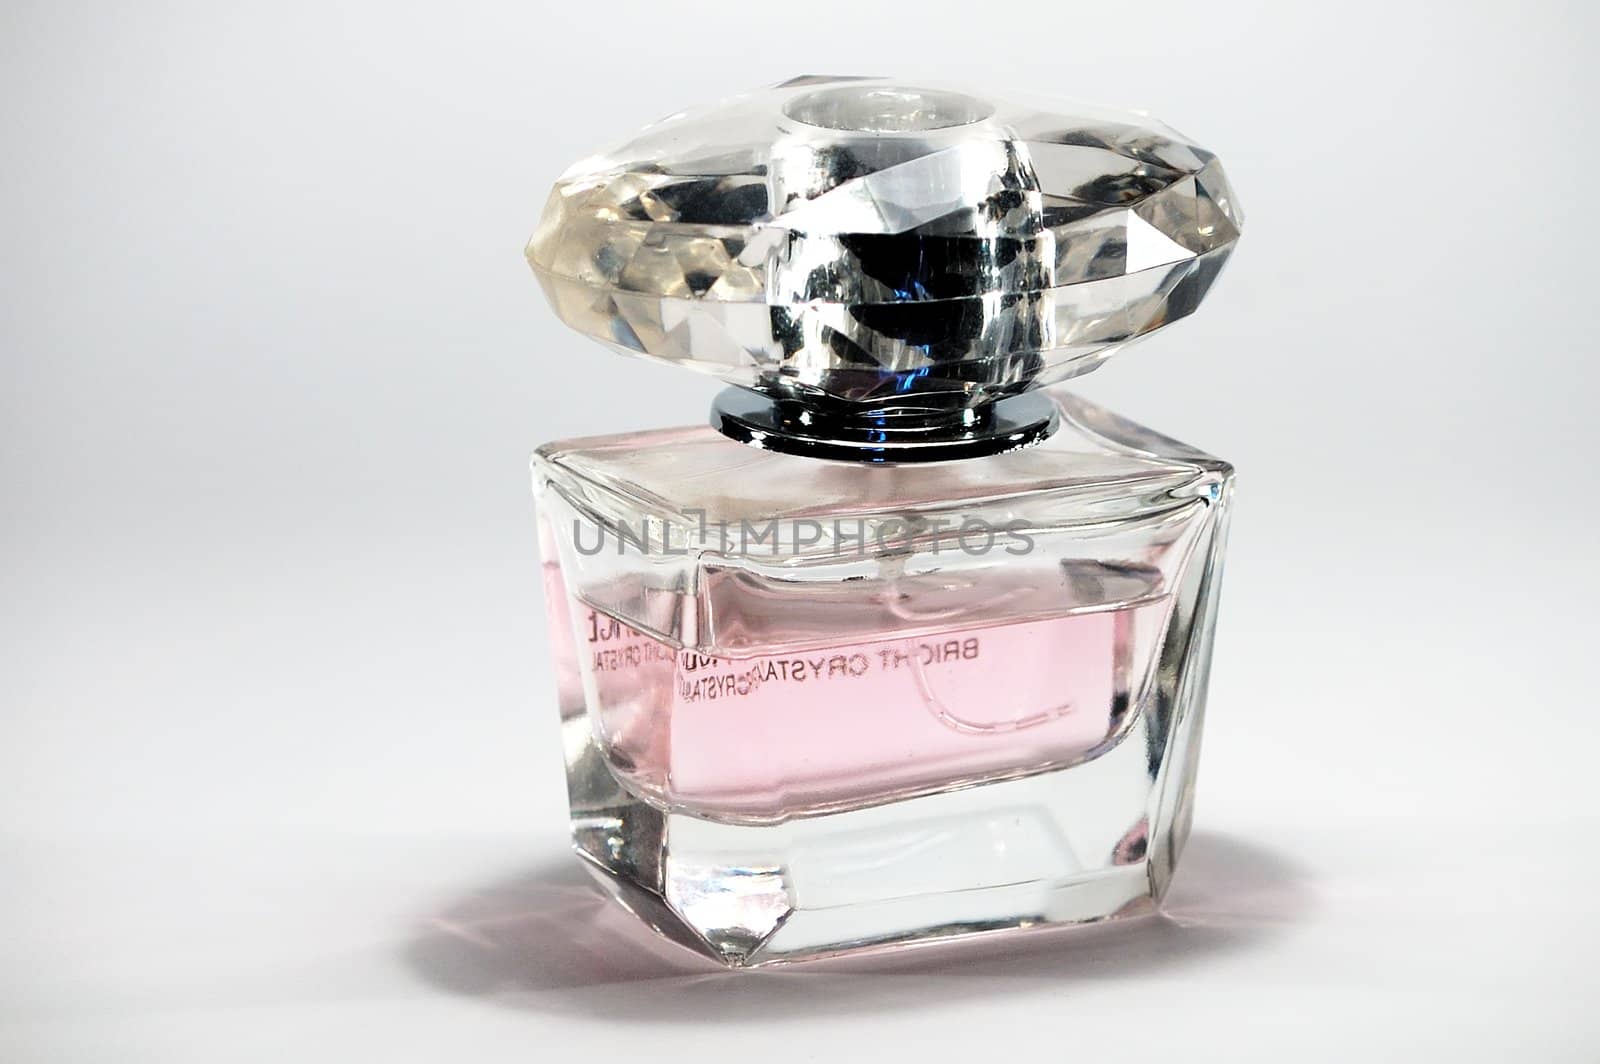 perfumes by kasim